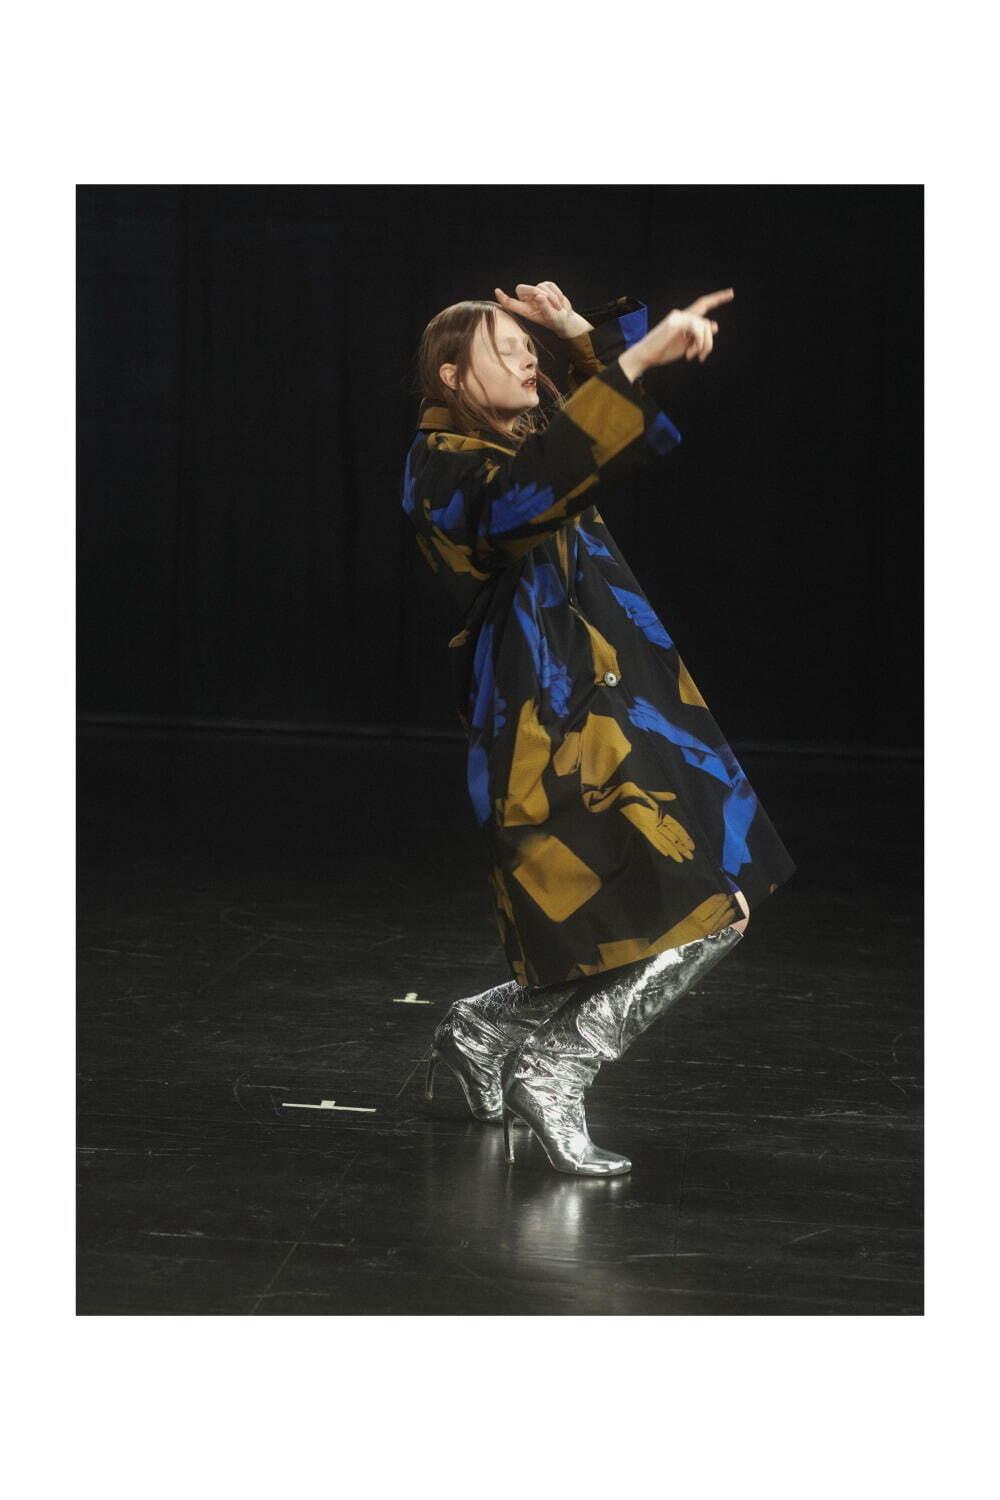 ドリス ヴァン ノッテン 2021-22年秋冬ウィメンズコレクション、舞い踊る身体と共鳴する衣服 コピー